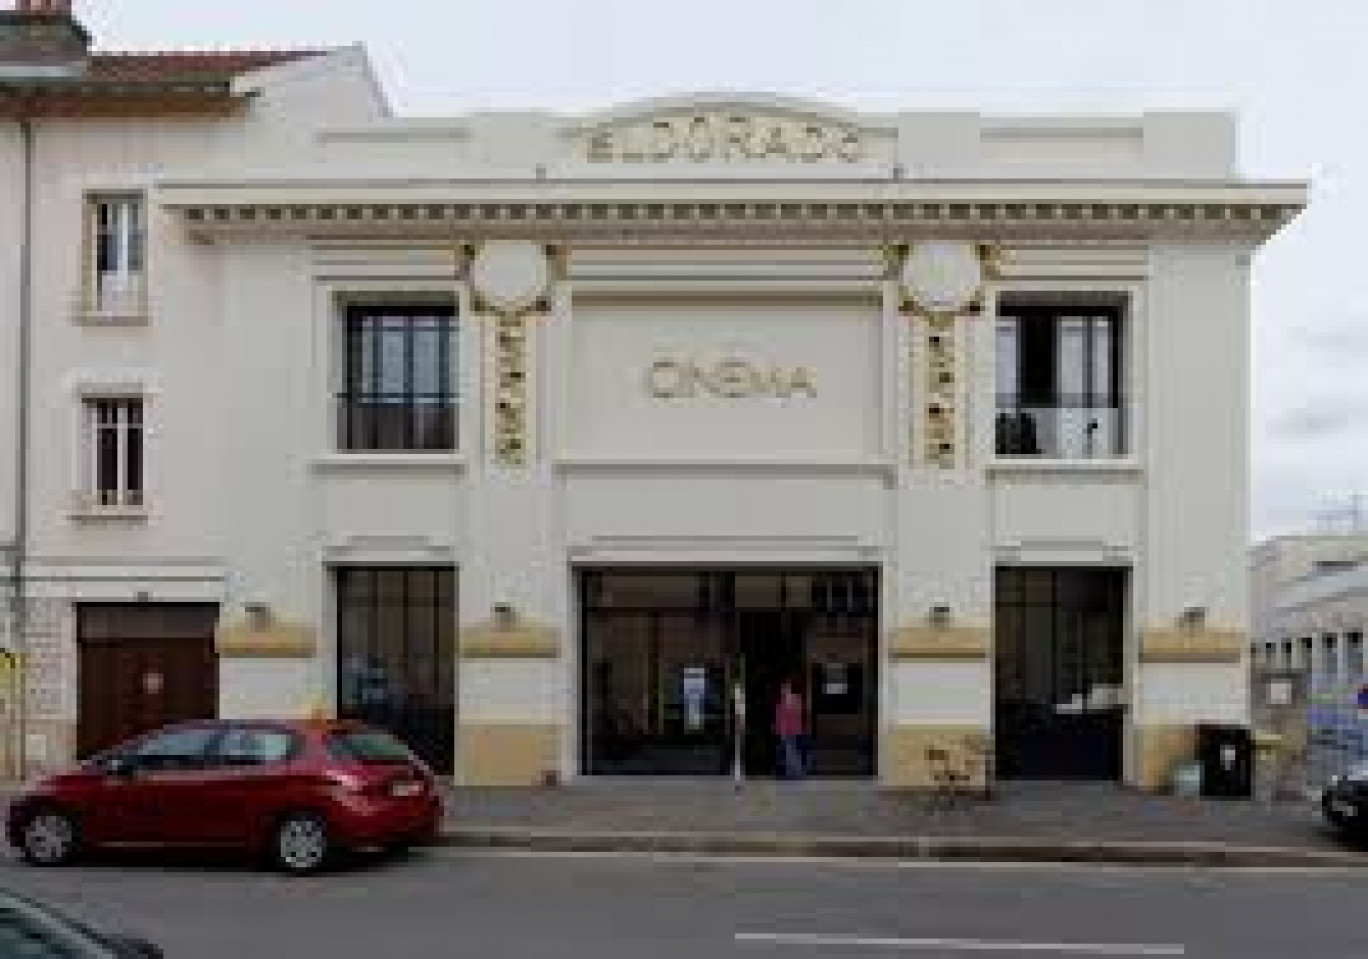 Le Cinéma Eldorado regroupe cinq salles.